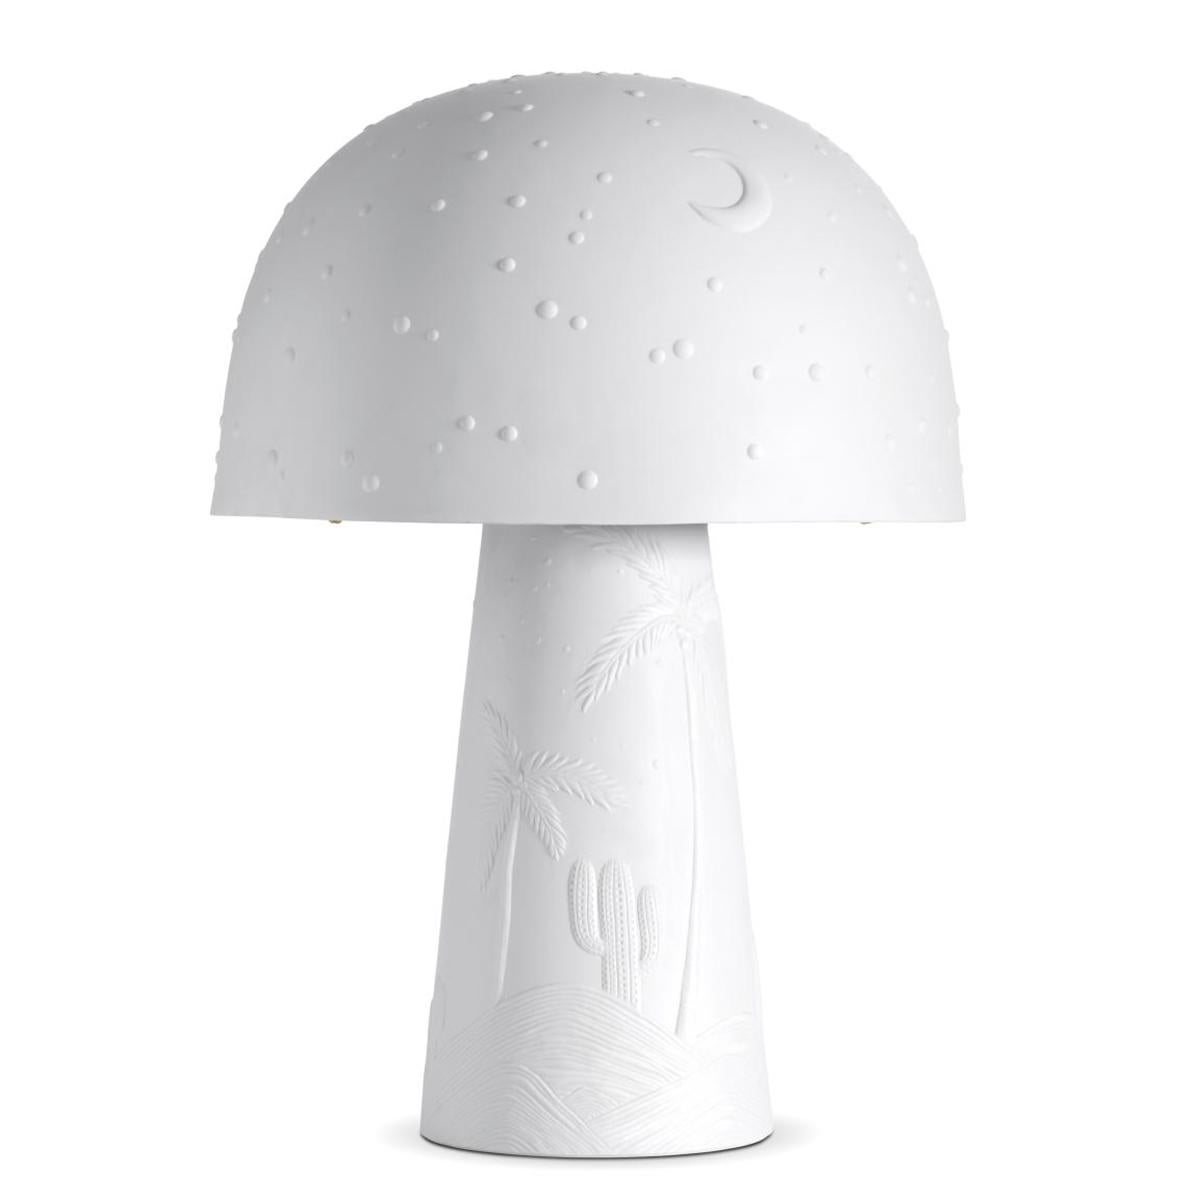 Table lamp desert white
all in white porcelain. With
1 bulb, lamp holder type E27,
max 40 watt. Bulb not included.